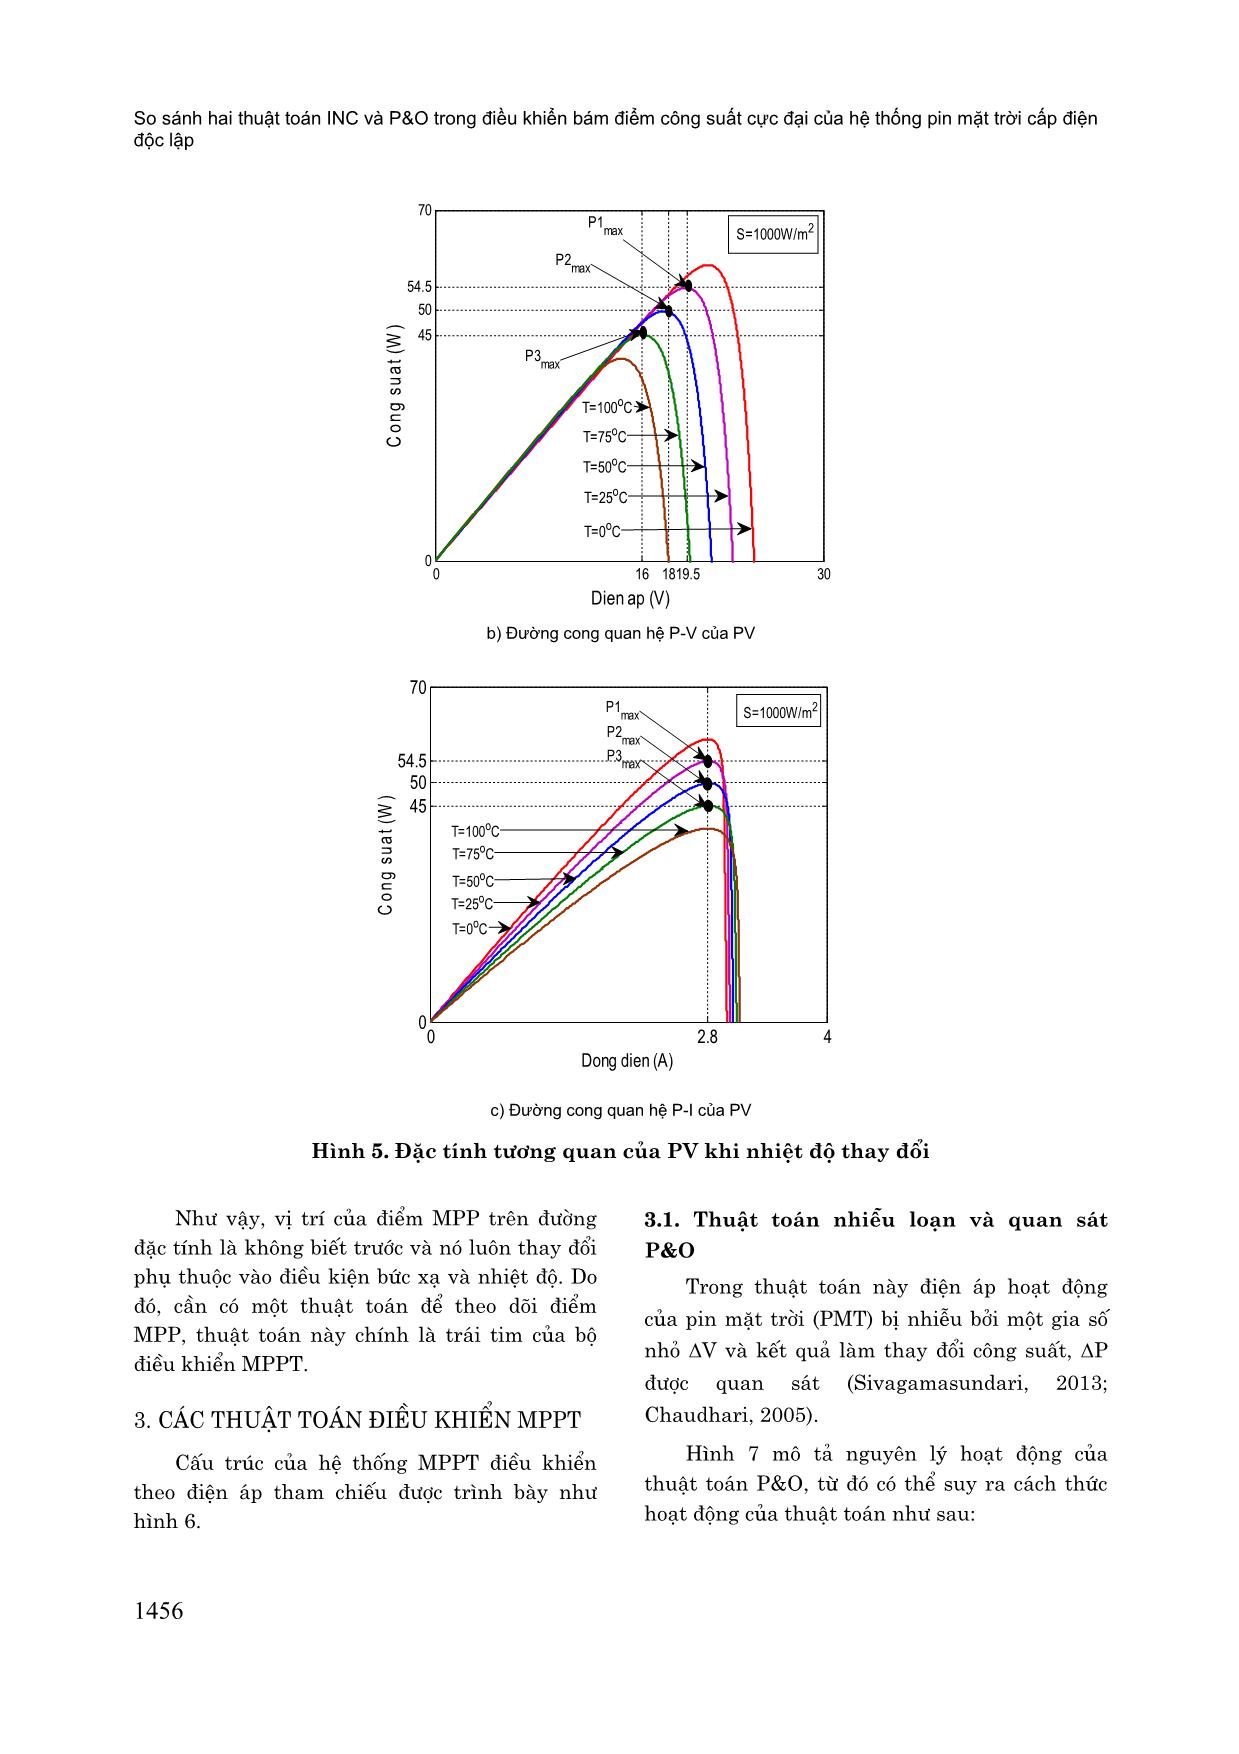 So sánh hai thuật toán INC và P&O trong điều khiển bám điểm công suất cực đại của hệ thống pin mặt trời cấp điện độc lập trang 5